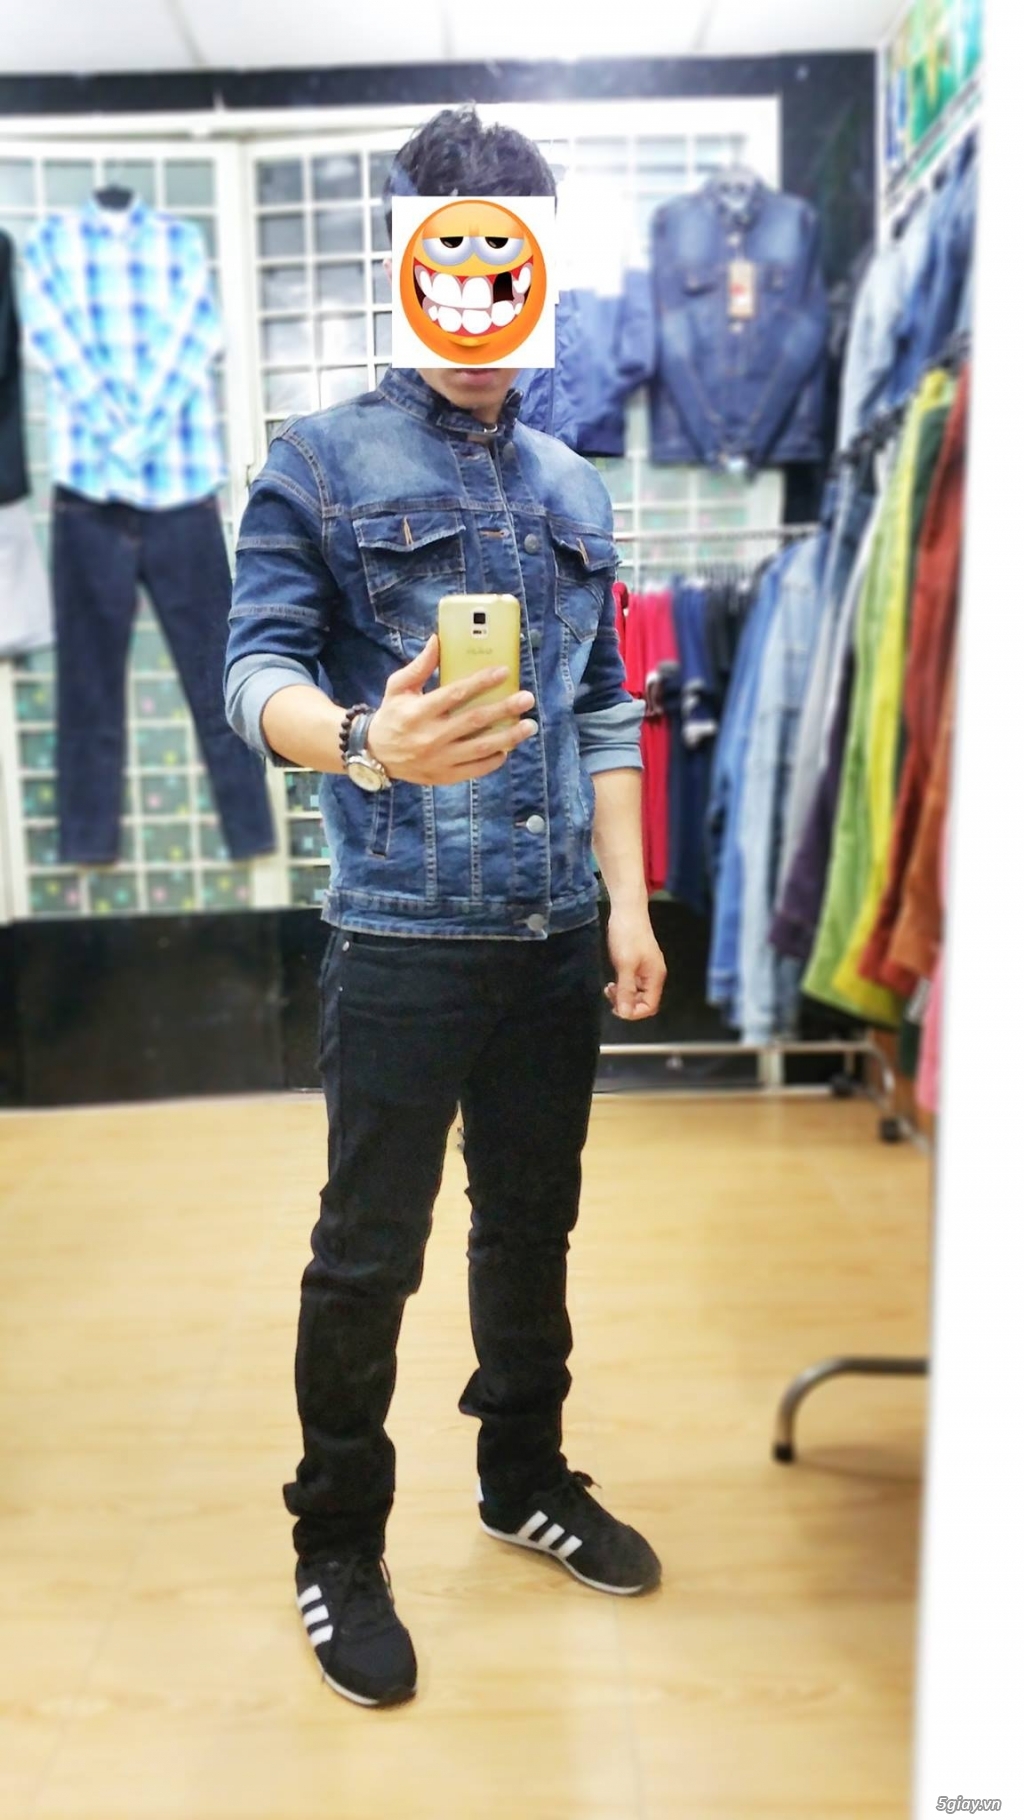 [TRÙM ĐỒ JEANS] - FCshop Chuyên quần jeans, sơmi jeans, khoác jeans .. - 14